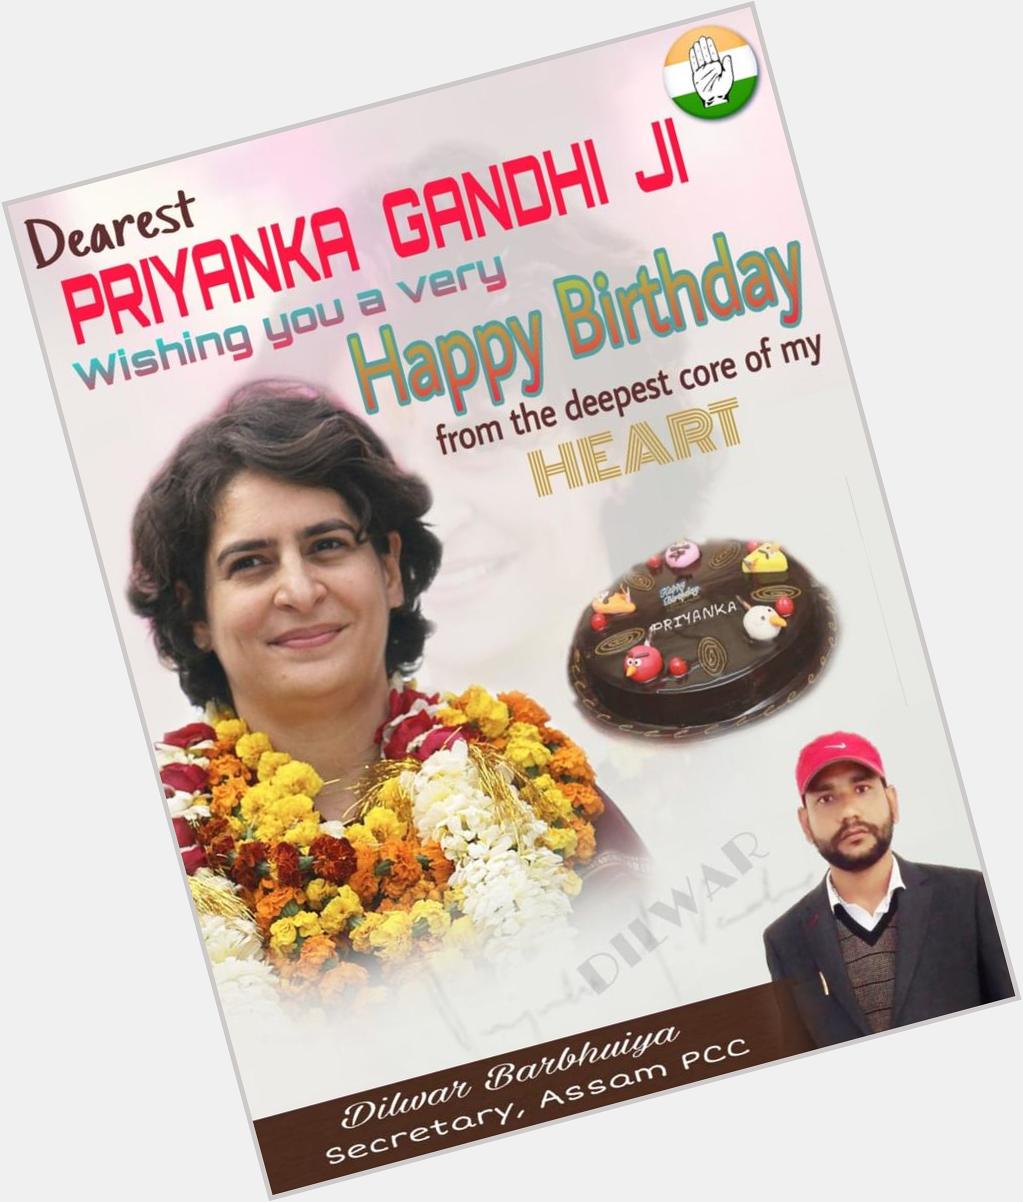 Mem.Many many happy returns of the day Happy Birthday to you.. Priyanka Gandhi ji...God bless you long life 